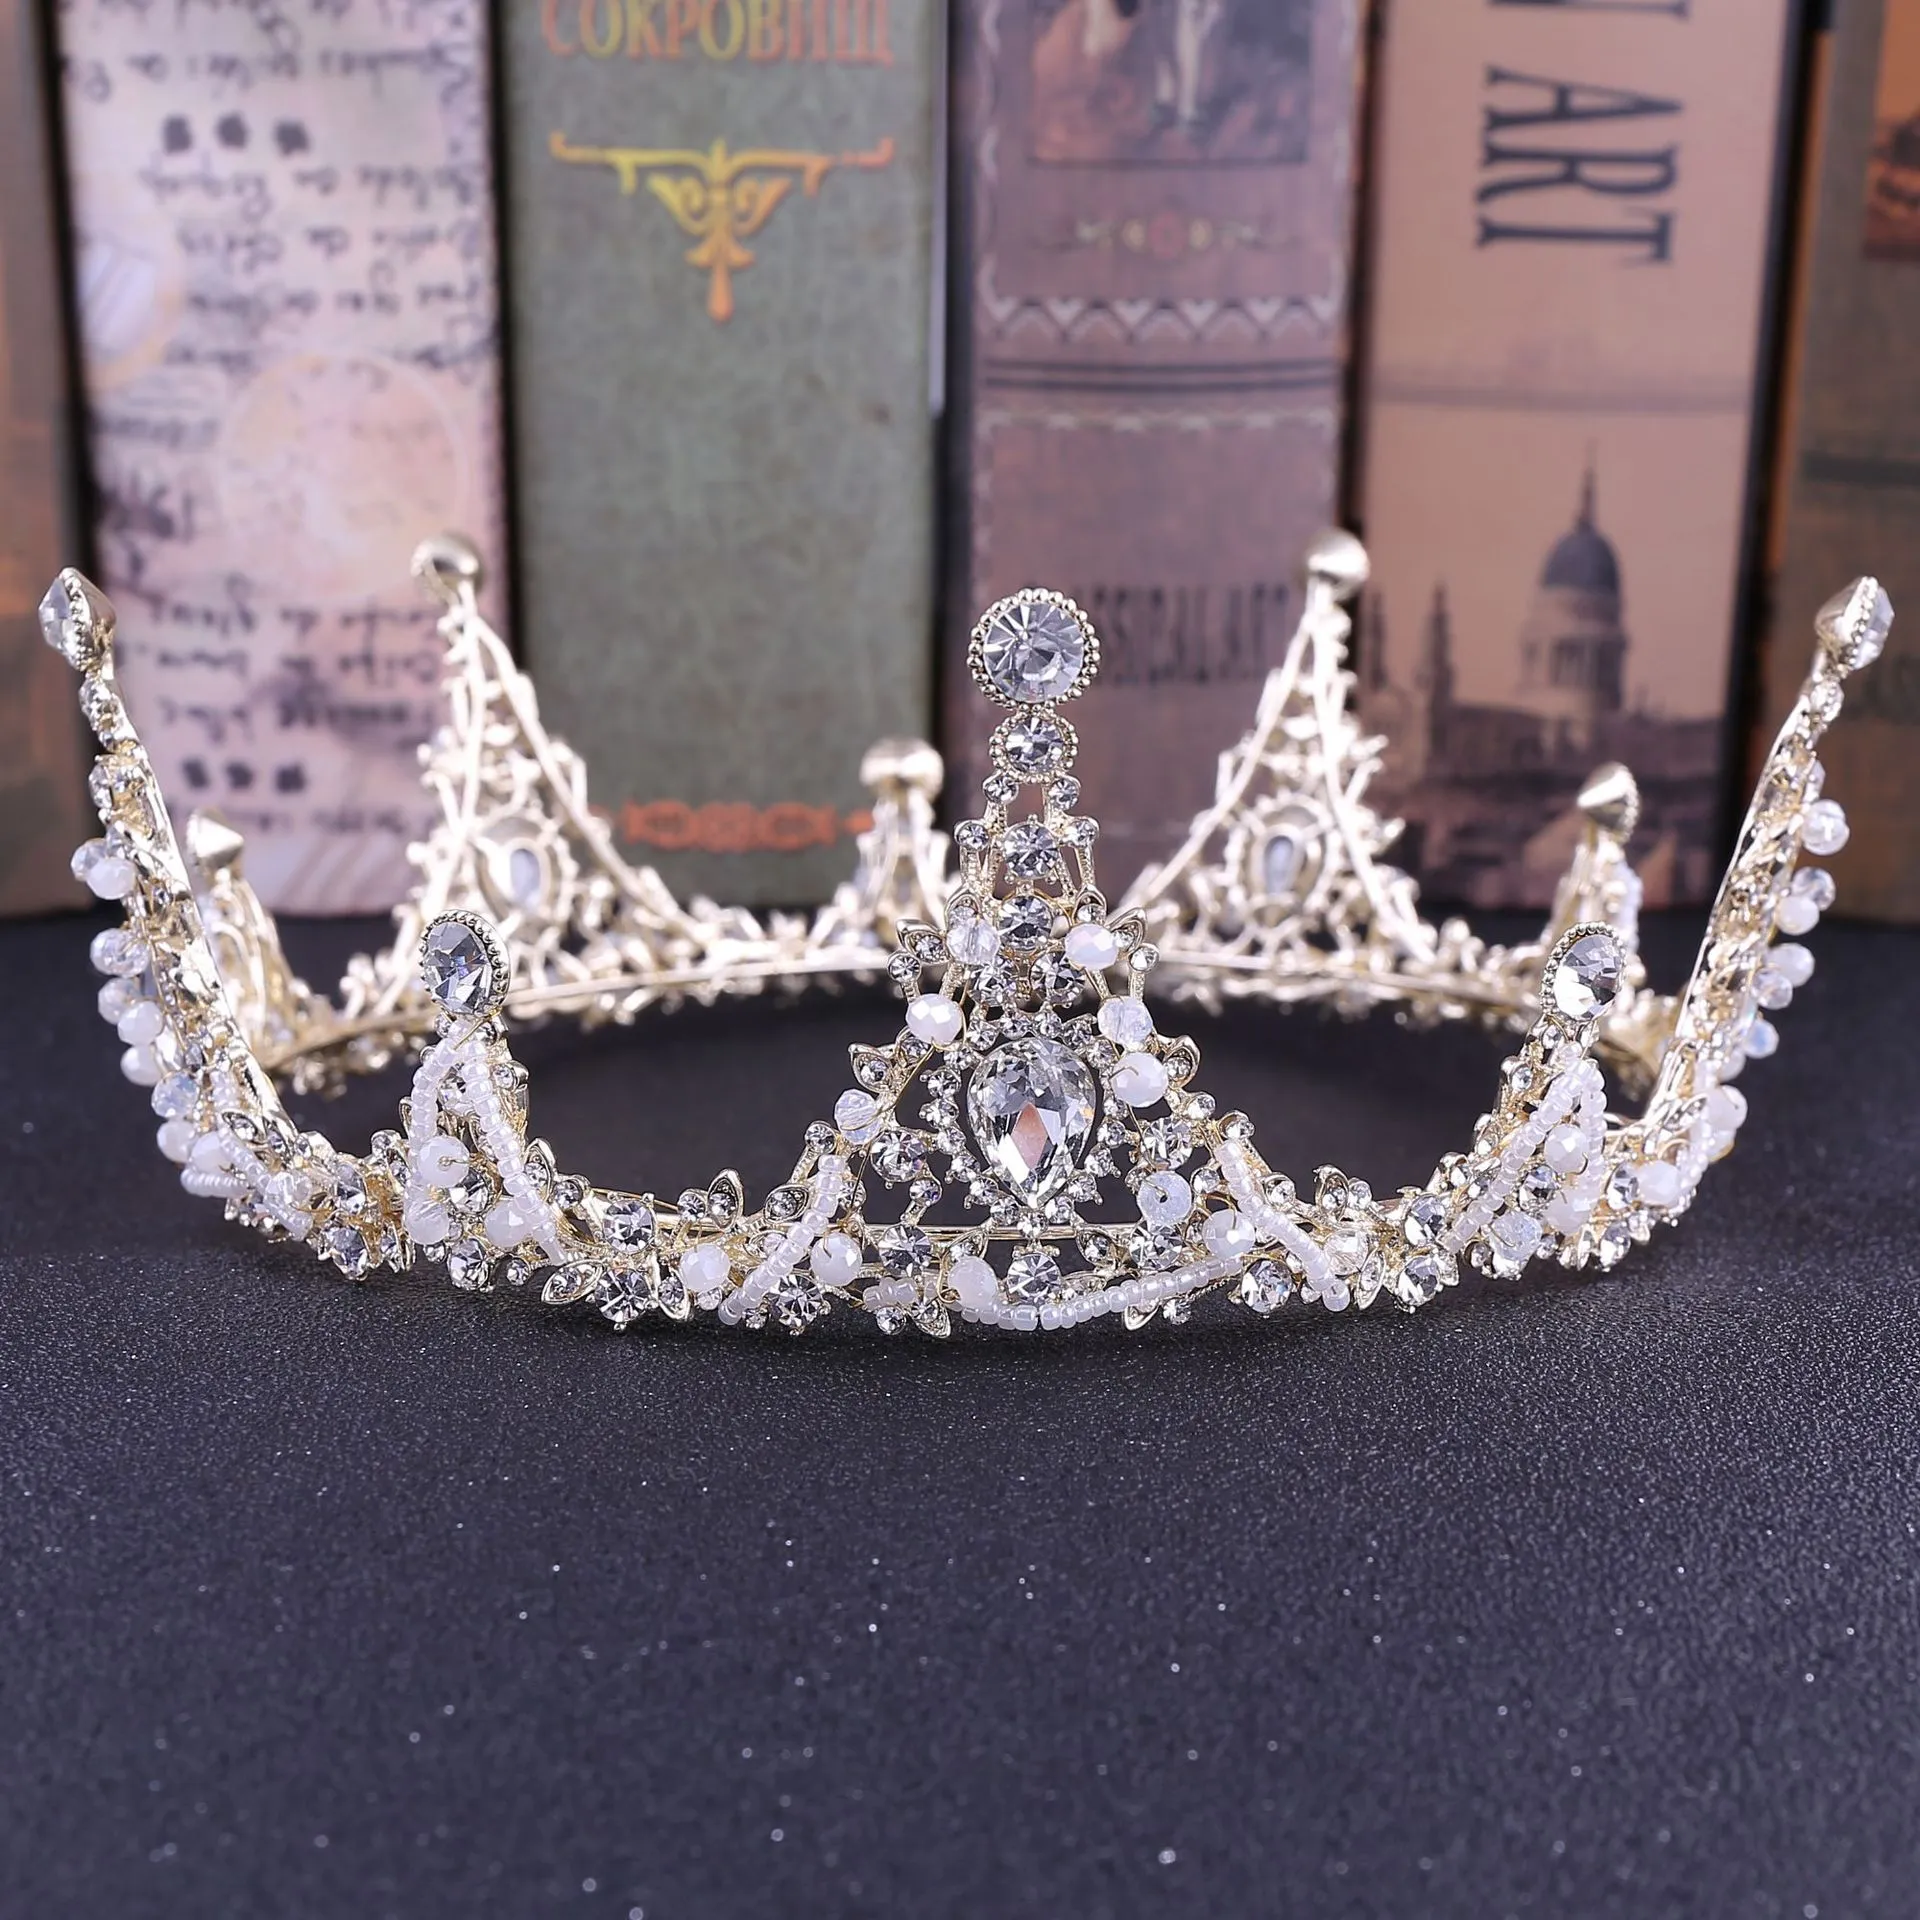 2021 خمر الباروك الزفاف تياراس اكسسوارات الذهب / الفضة بلورات ملونة الأميرة أغطية الرأس مذهلة الزفاف تياراس و crowns12147